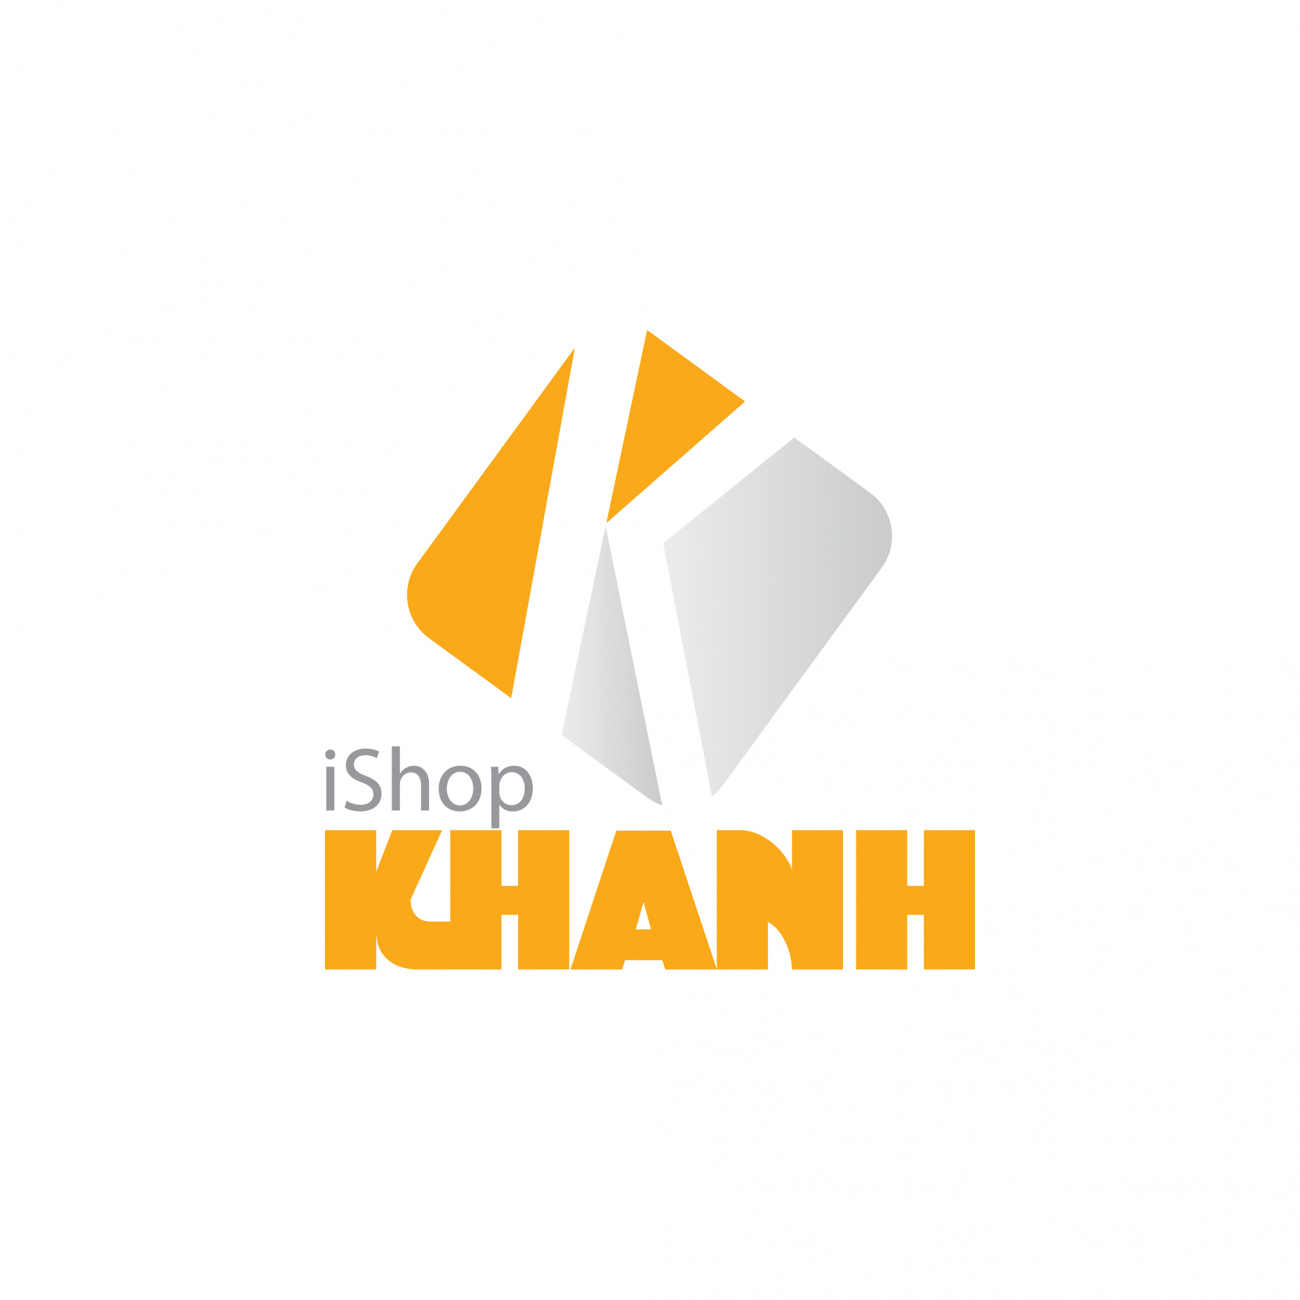 Cửa hàng sửa chữa điện thoại Khanhishop - Q.6